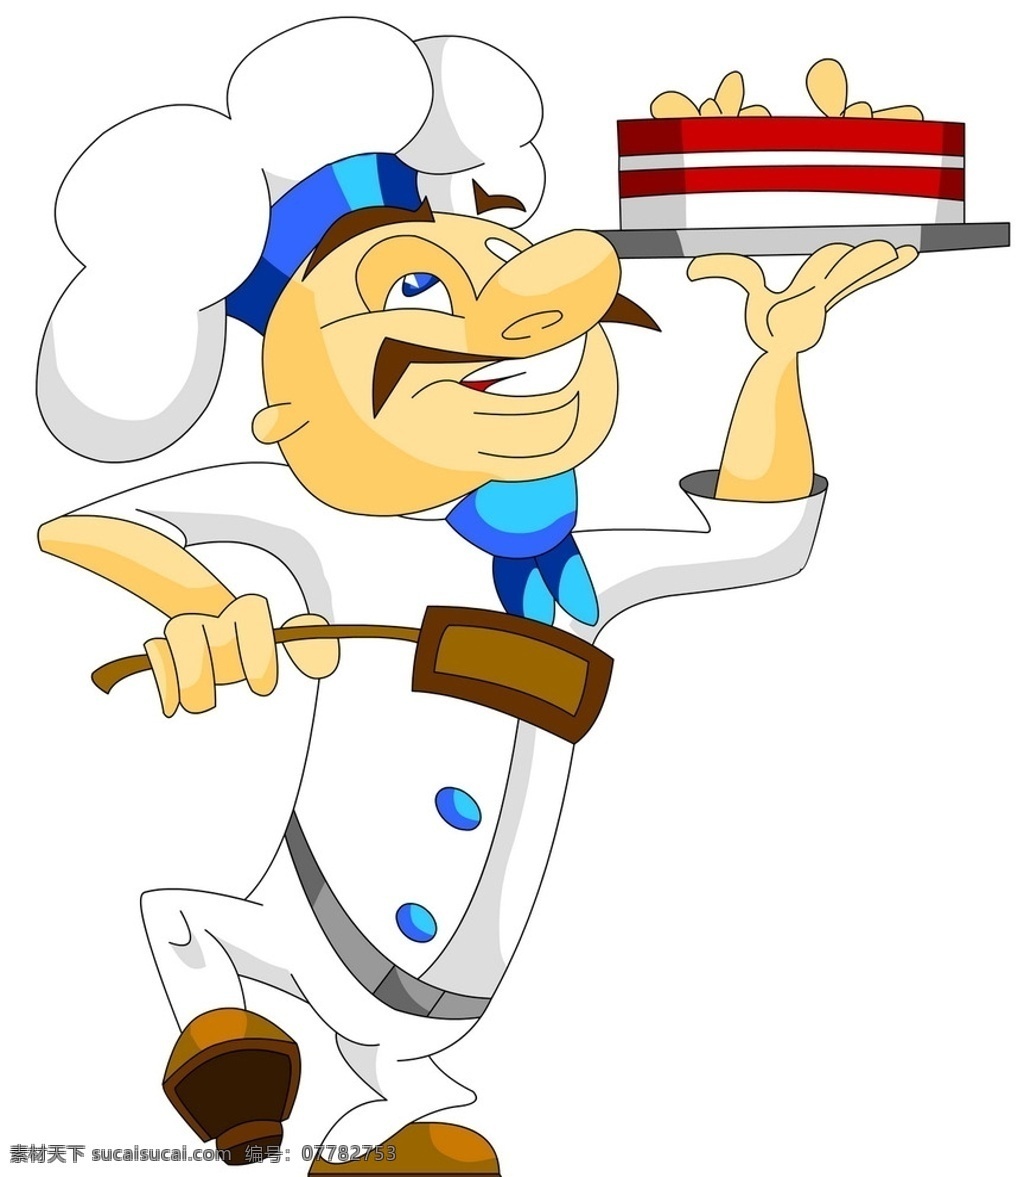 厨师 卡通厨师 蛋糕师 工人 小厨师 矢量 美食 西餐 动漫动画 动漫人物 人物图库 职业人物